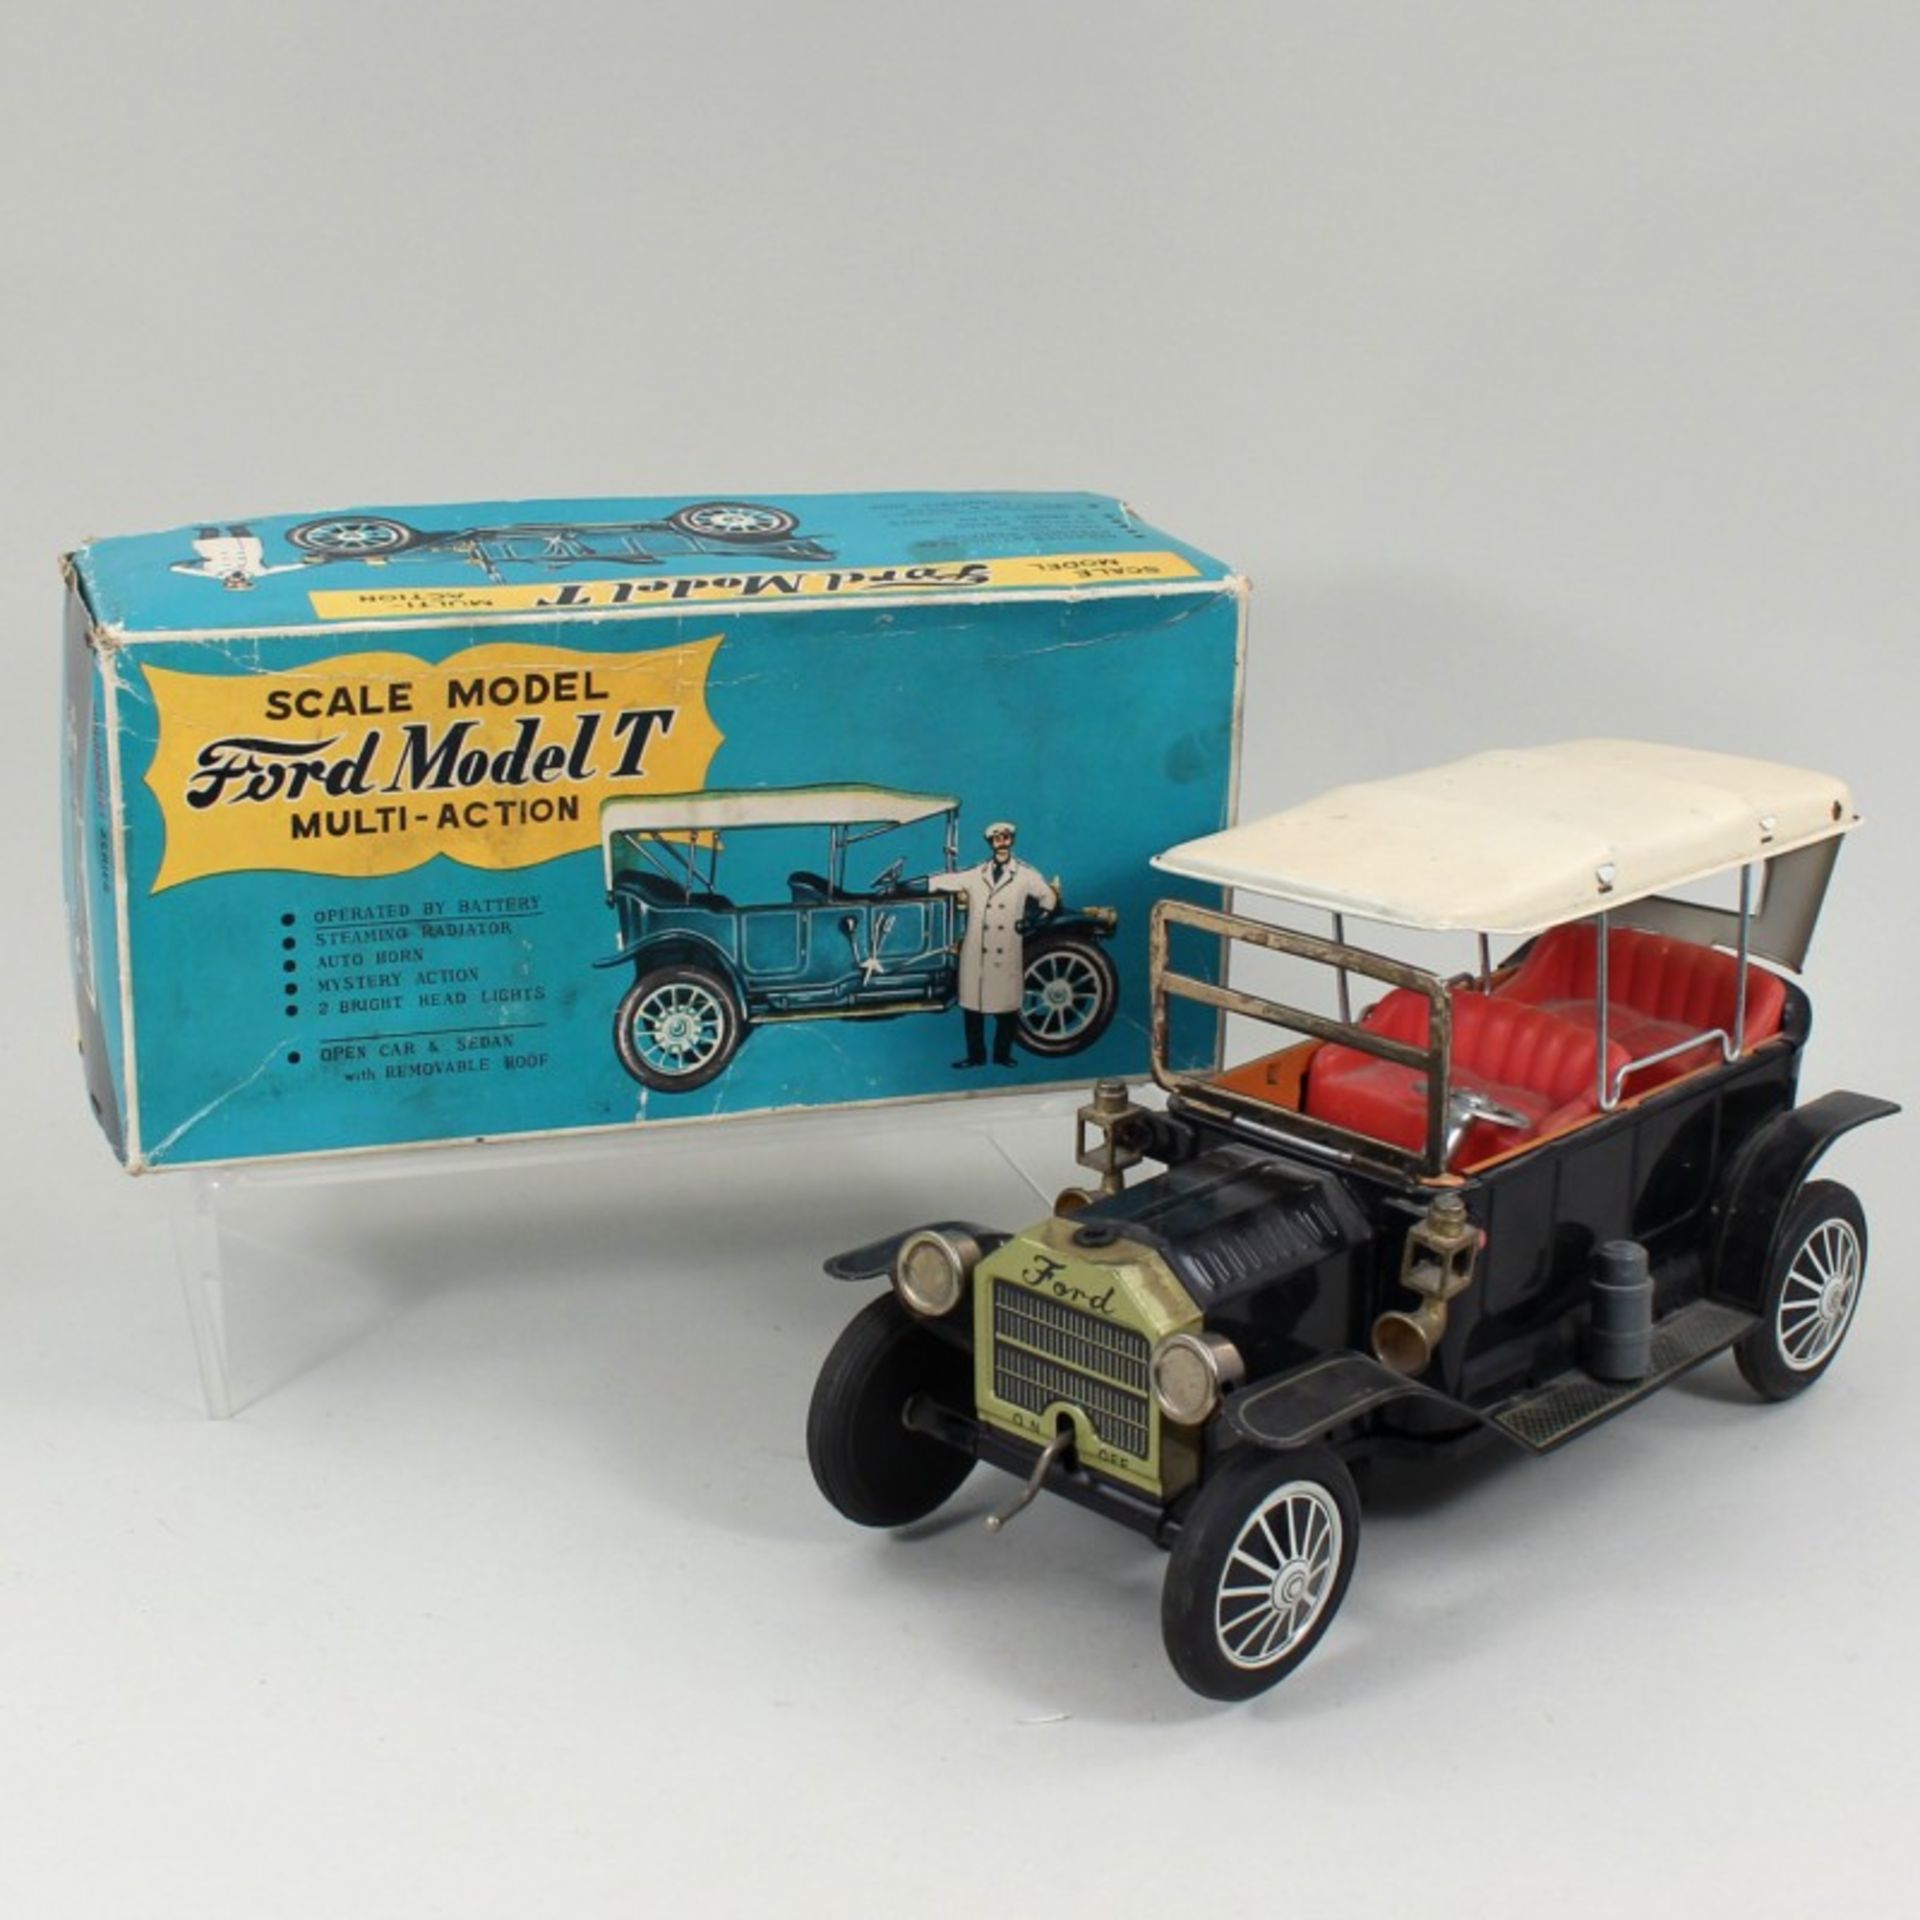 Sunrise Toys - Blechspielzeug  Oldtimer "Ford Model T" Multi-Action, Sunrise Toys Japan, OK,